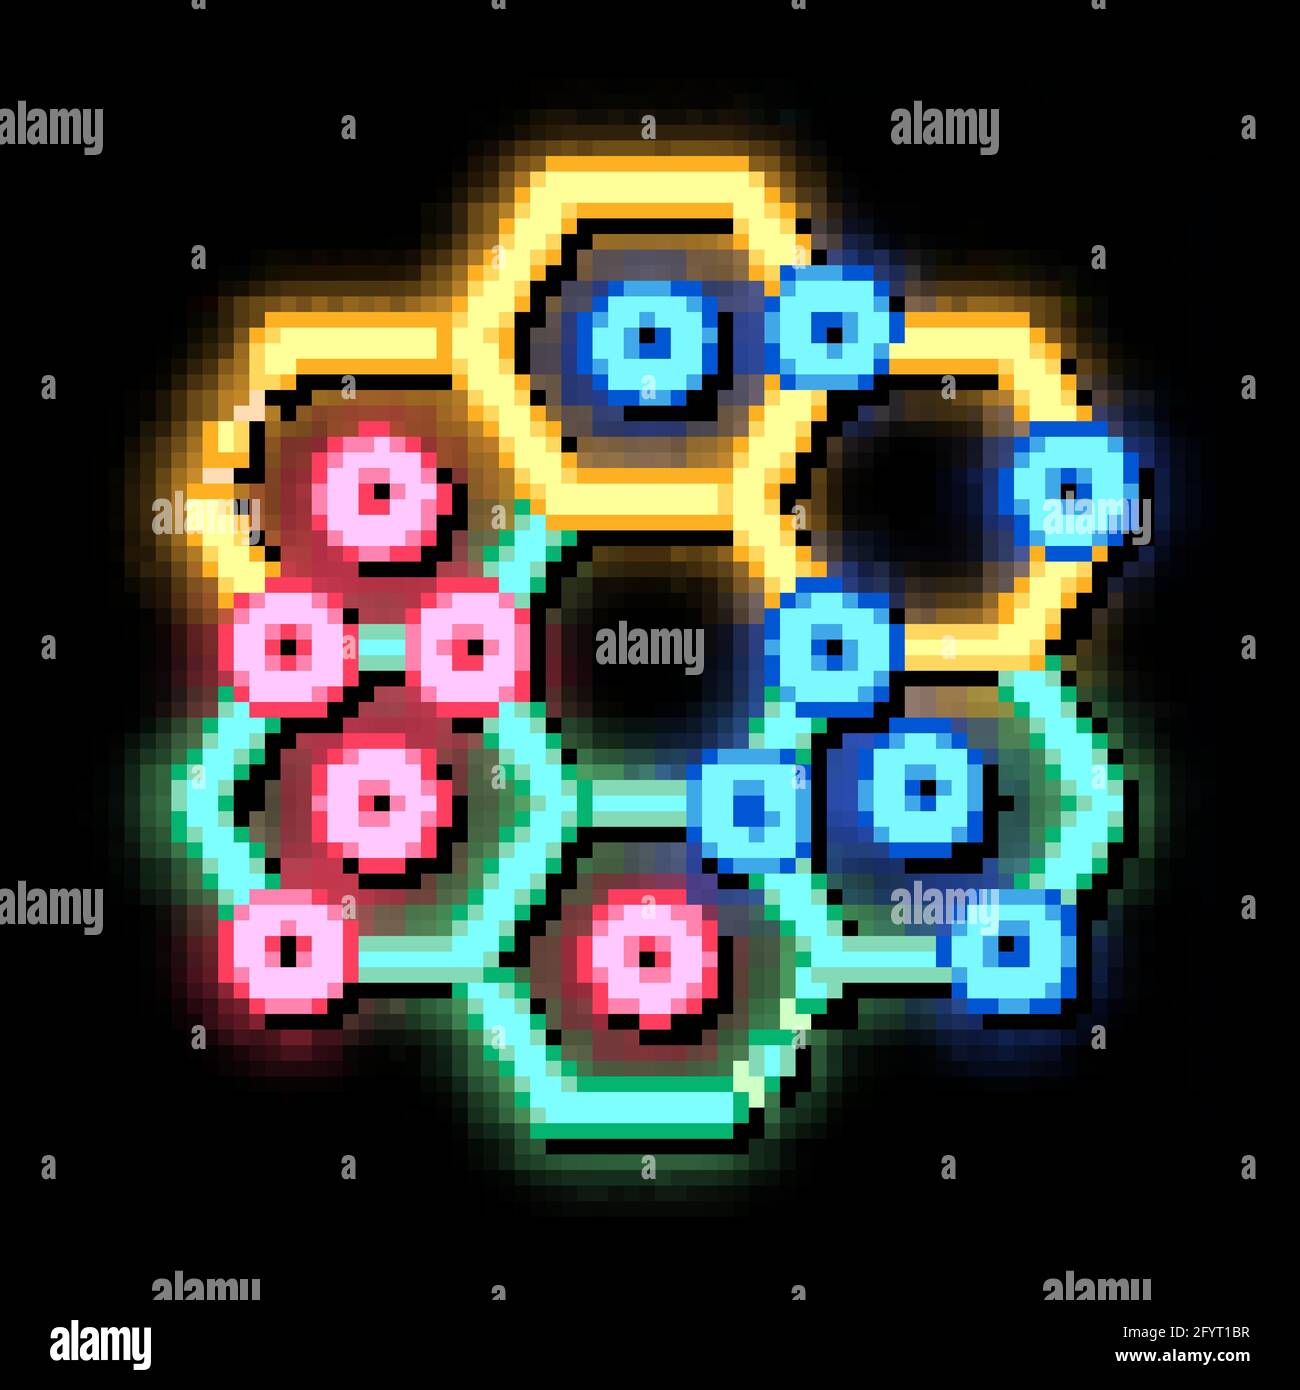 Interaktive Spielpunkte für Kinder – Illustration mit Neon-Glow-Symbol Stock Vektor